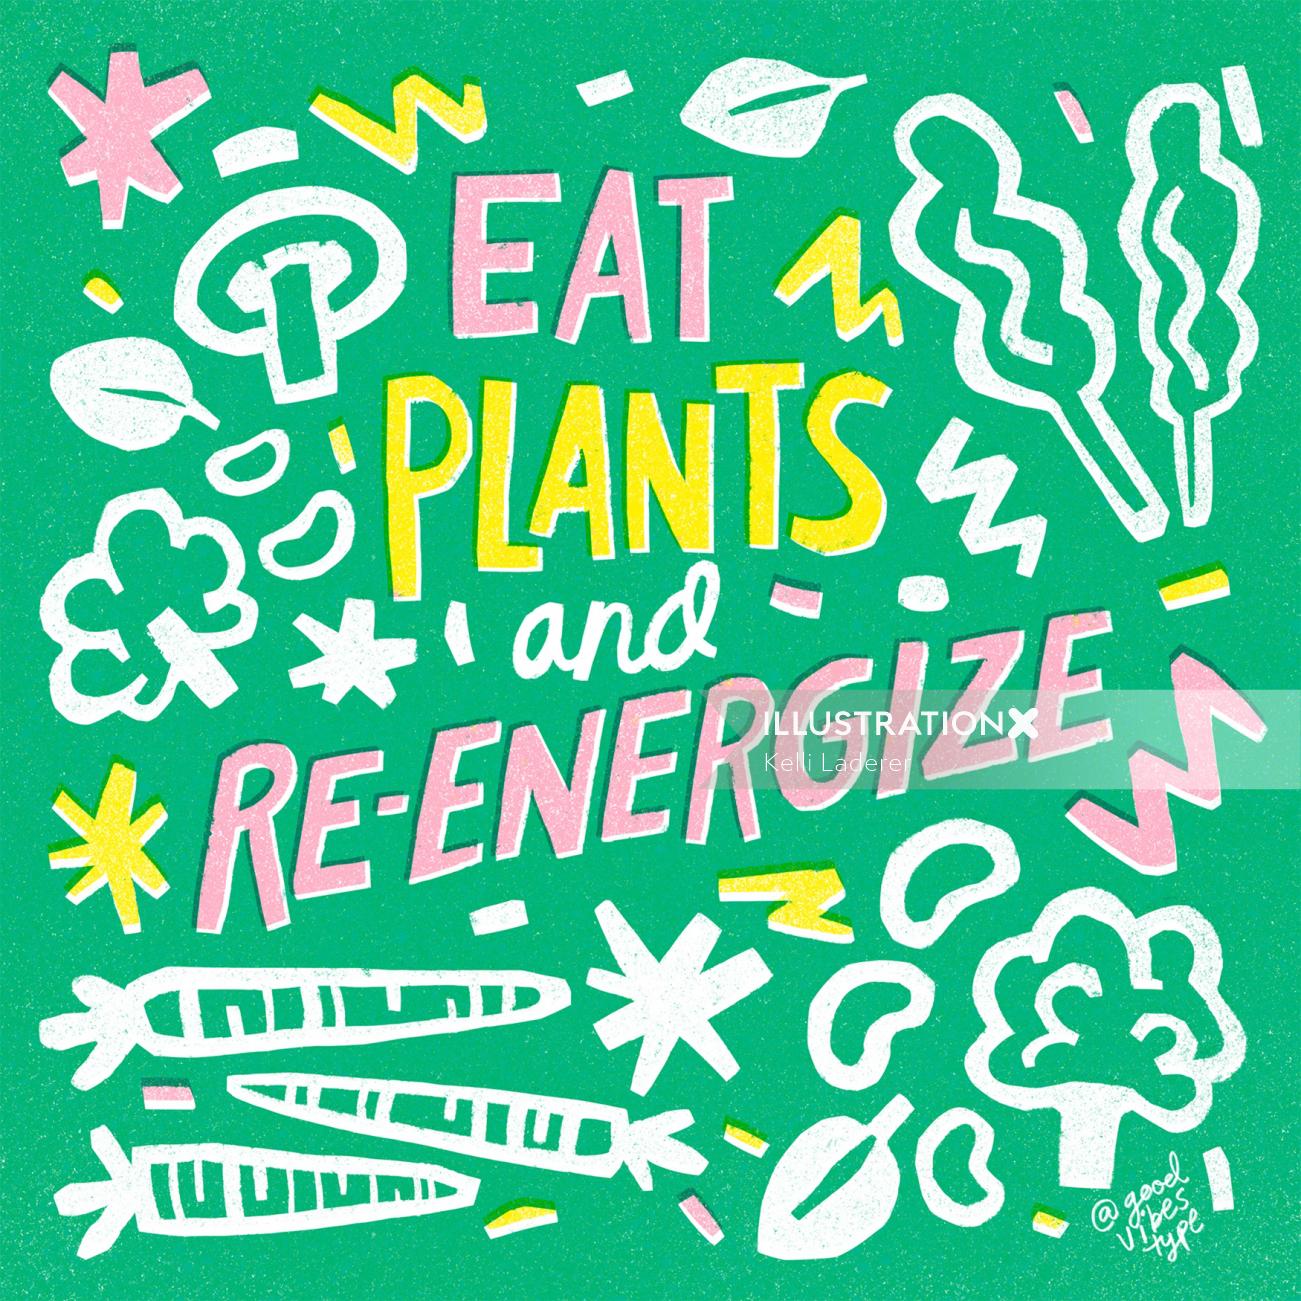 Eat plants & Re-energize